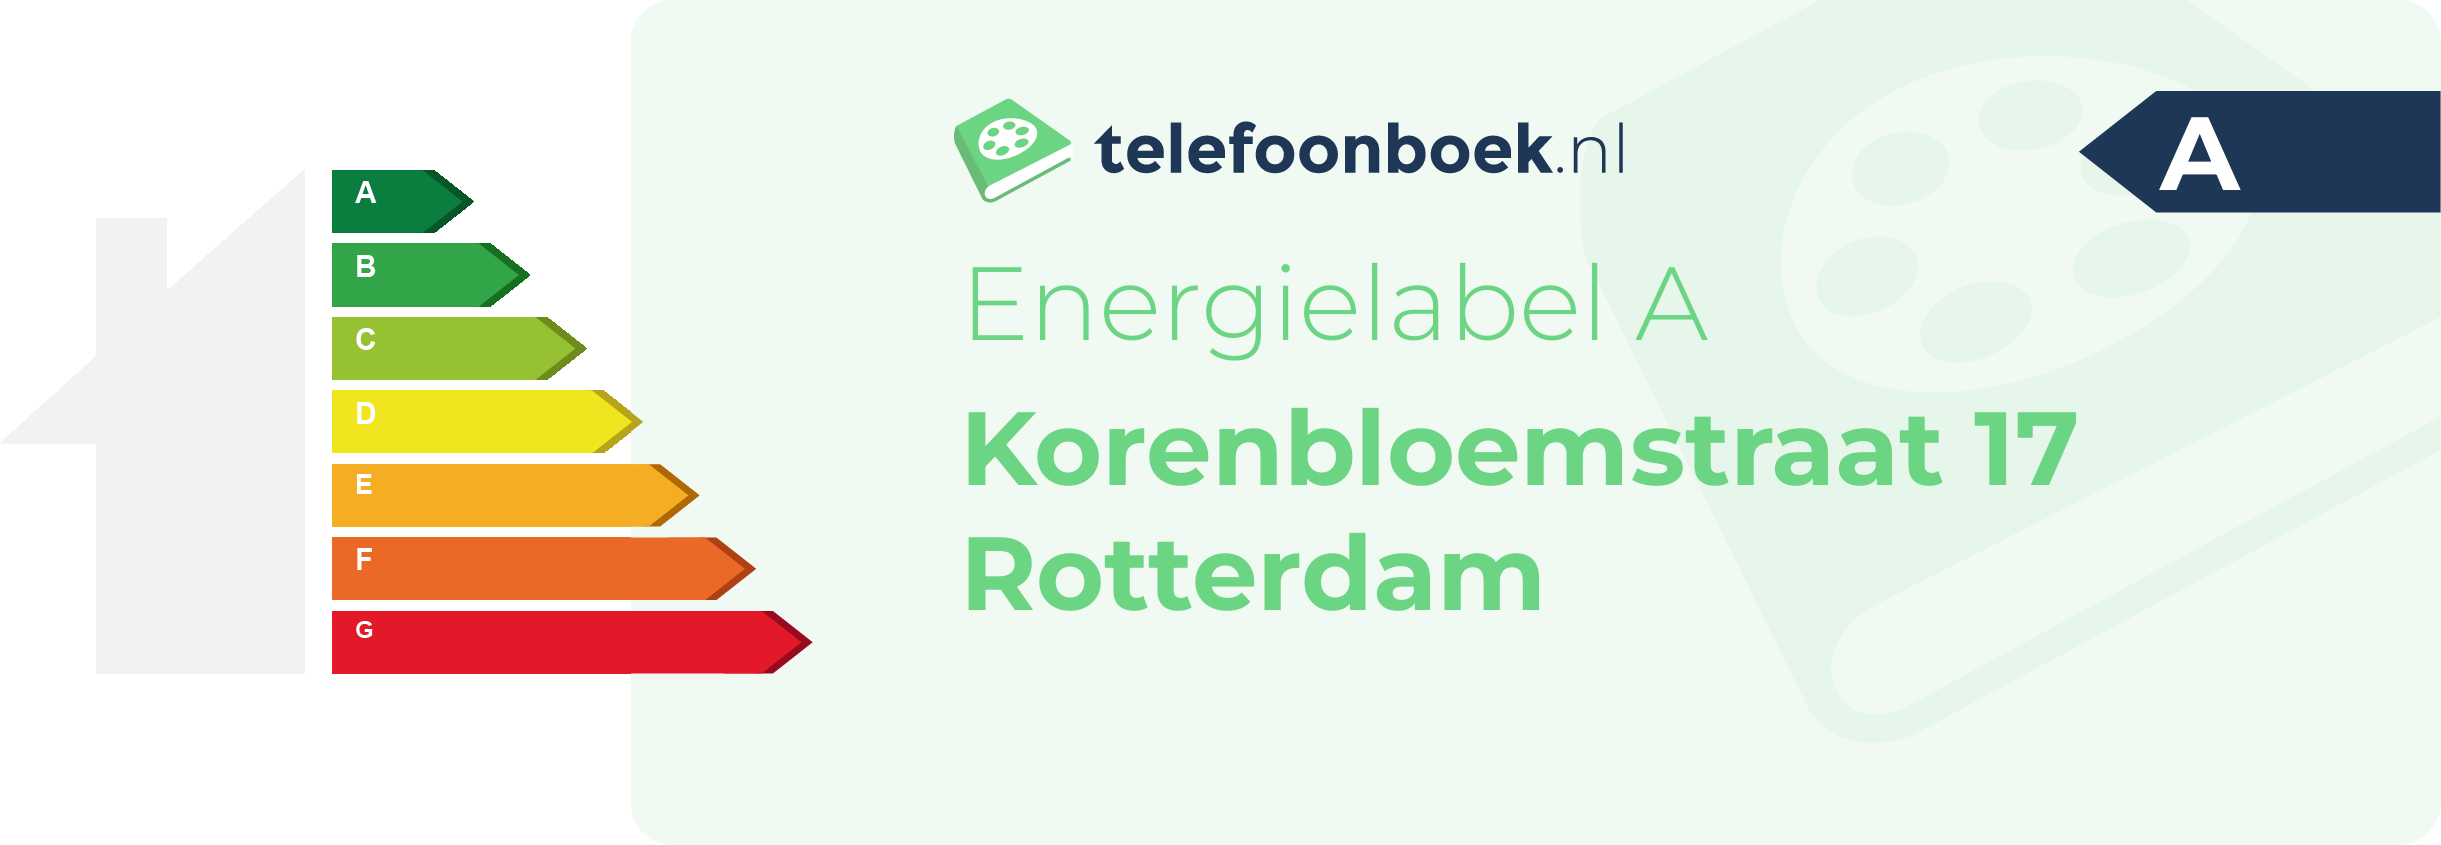 Energielabel Korenbloemstraat 17 Rotterdam